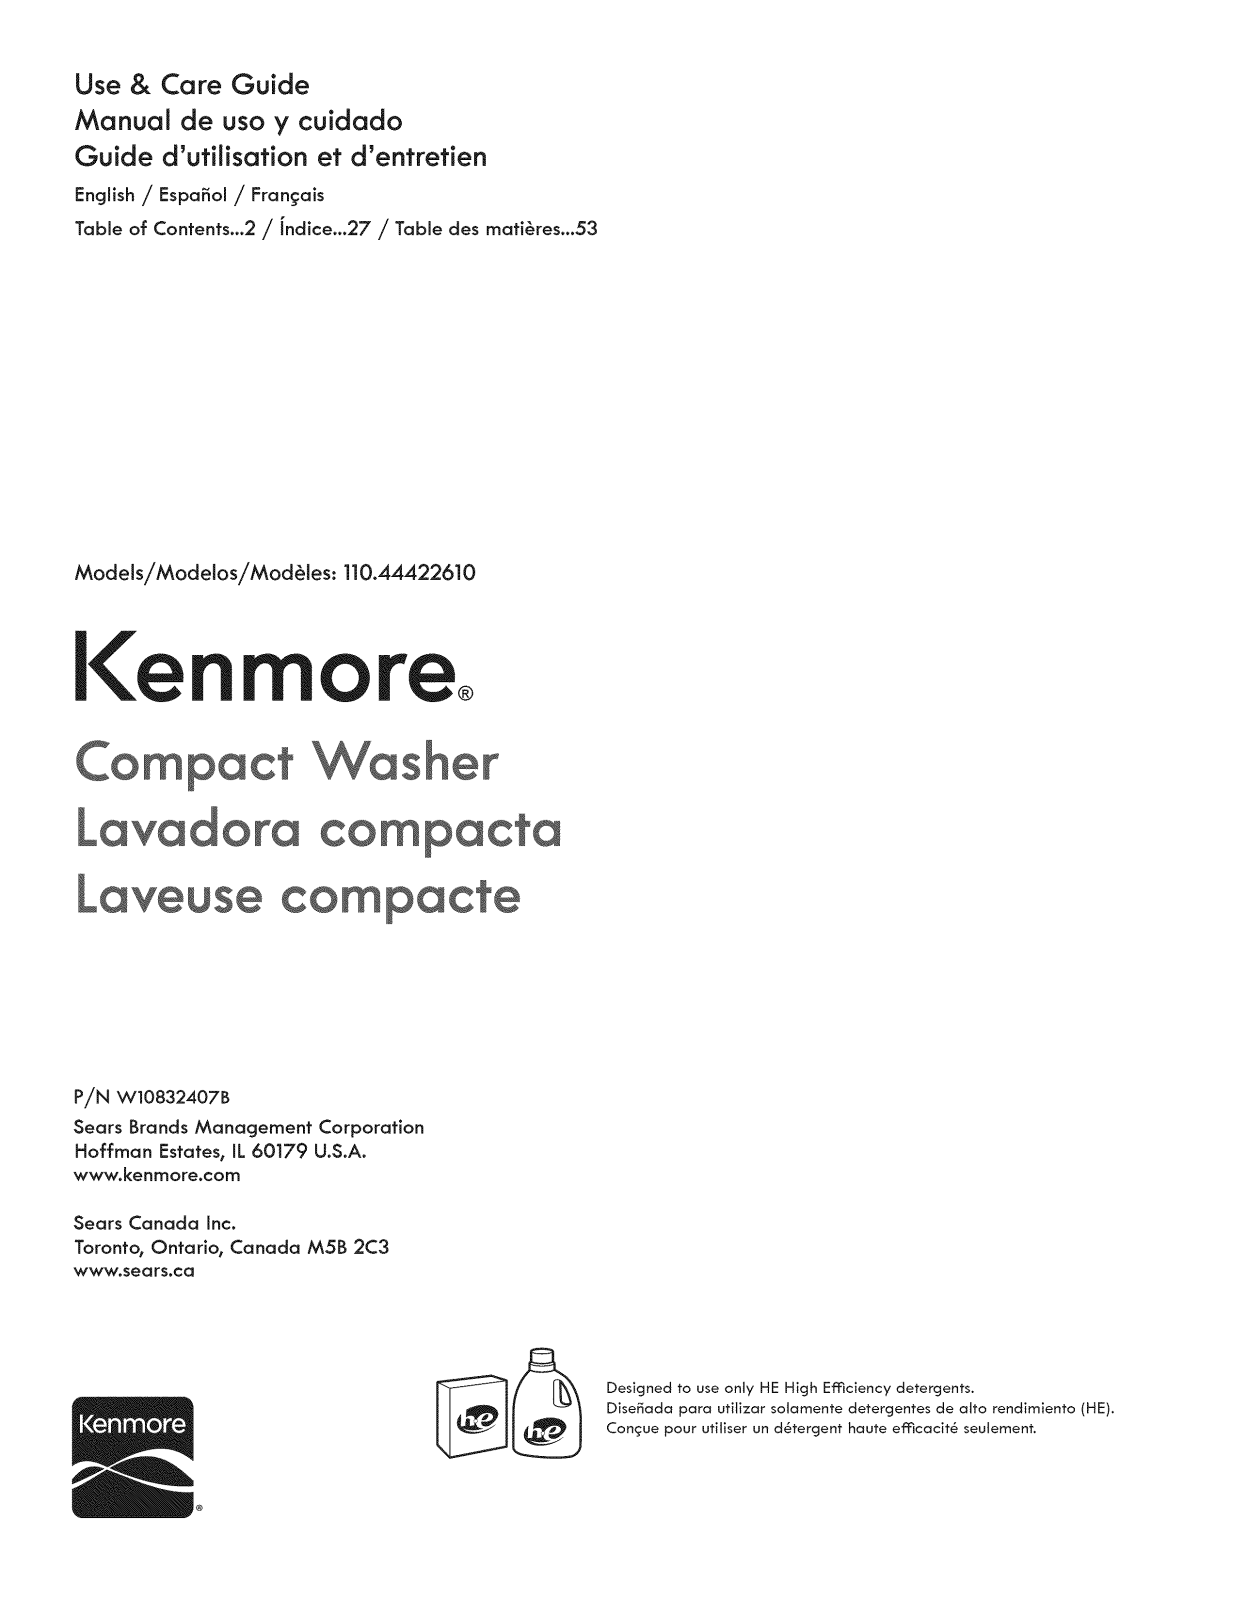 Kenmore 11044422610, 11044422510 Owner’s Manual